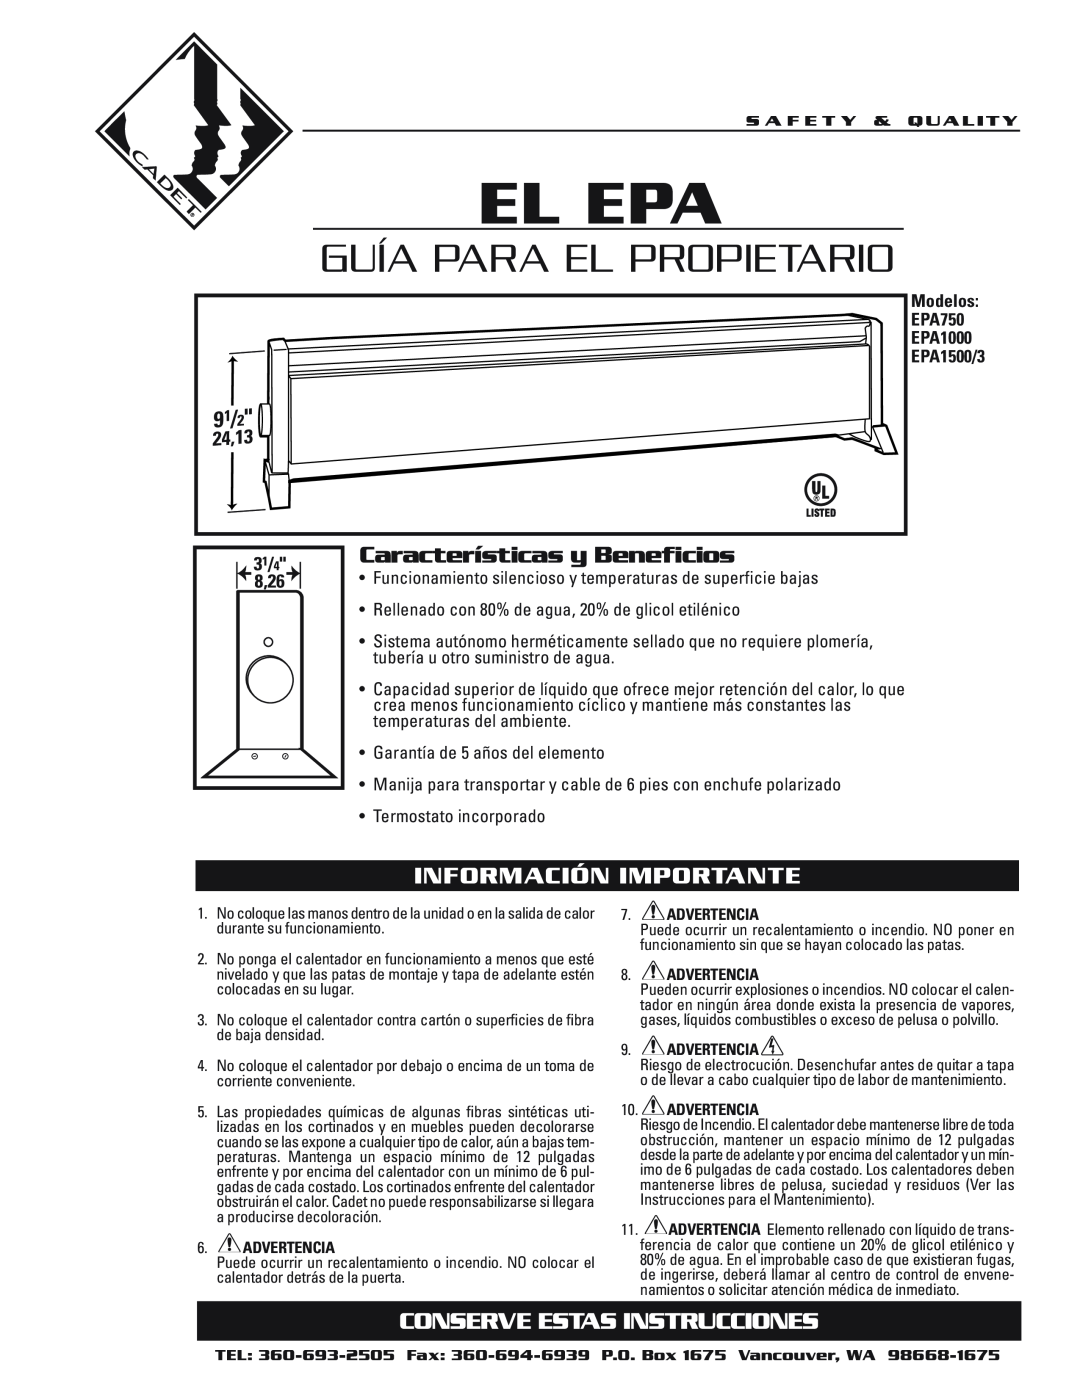 Cadet EPA1500/3 El Epa, Guía Para El Propietario, Características y Beneficios, Información Importante, 31/4, 8,26, 24,13 